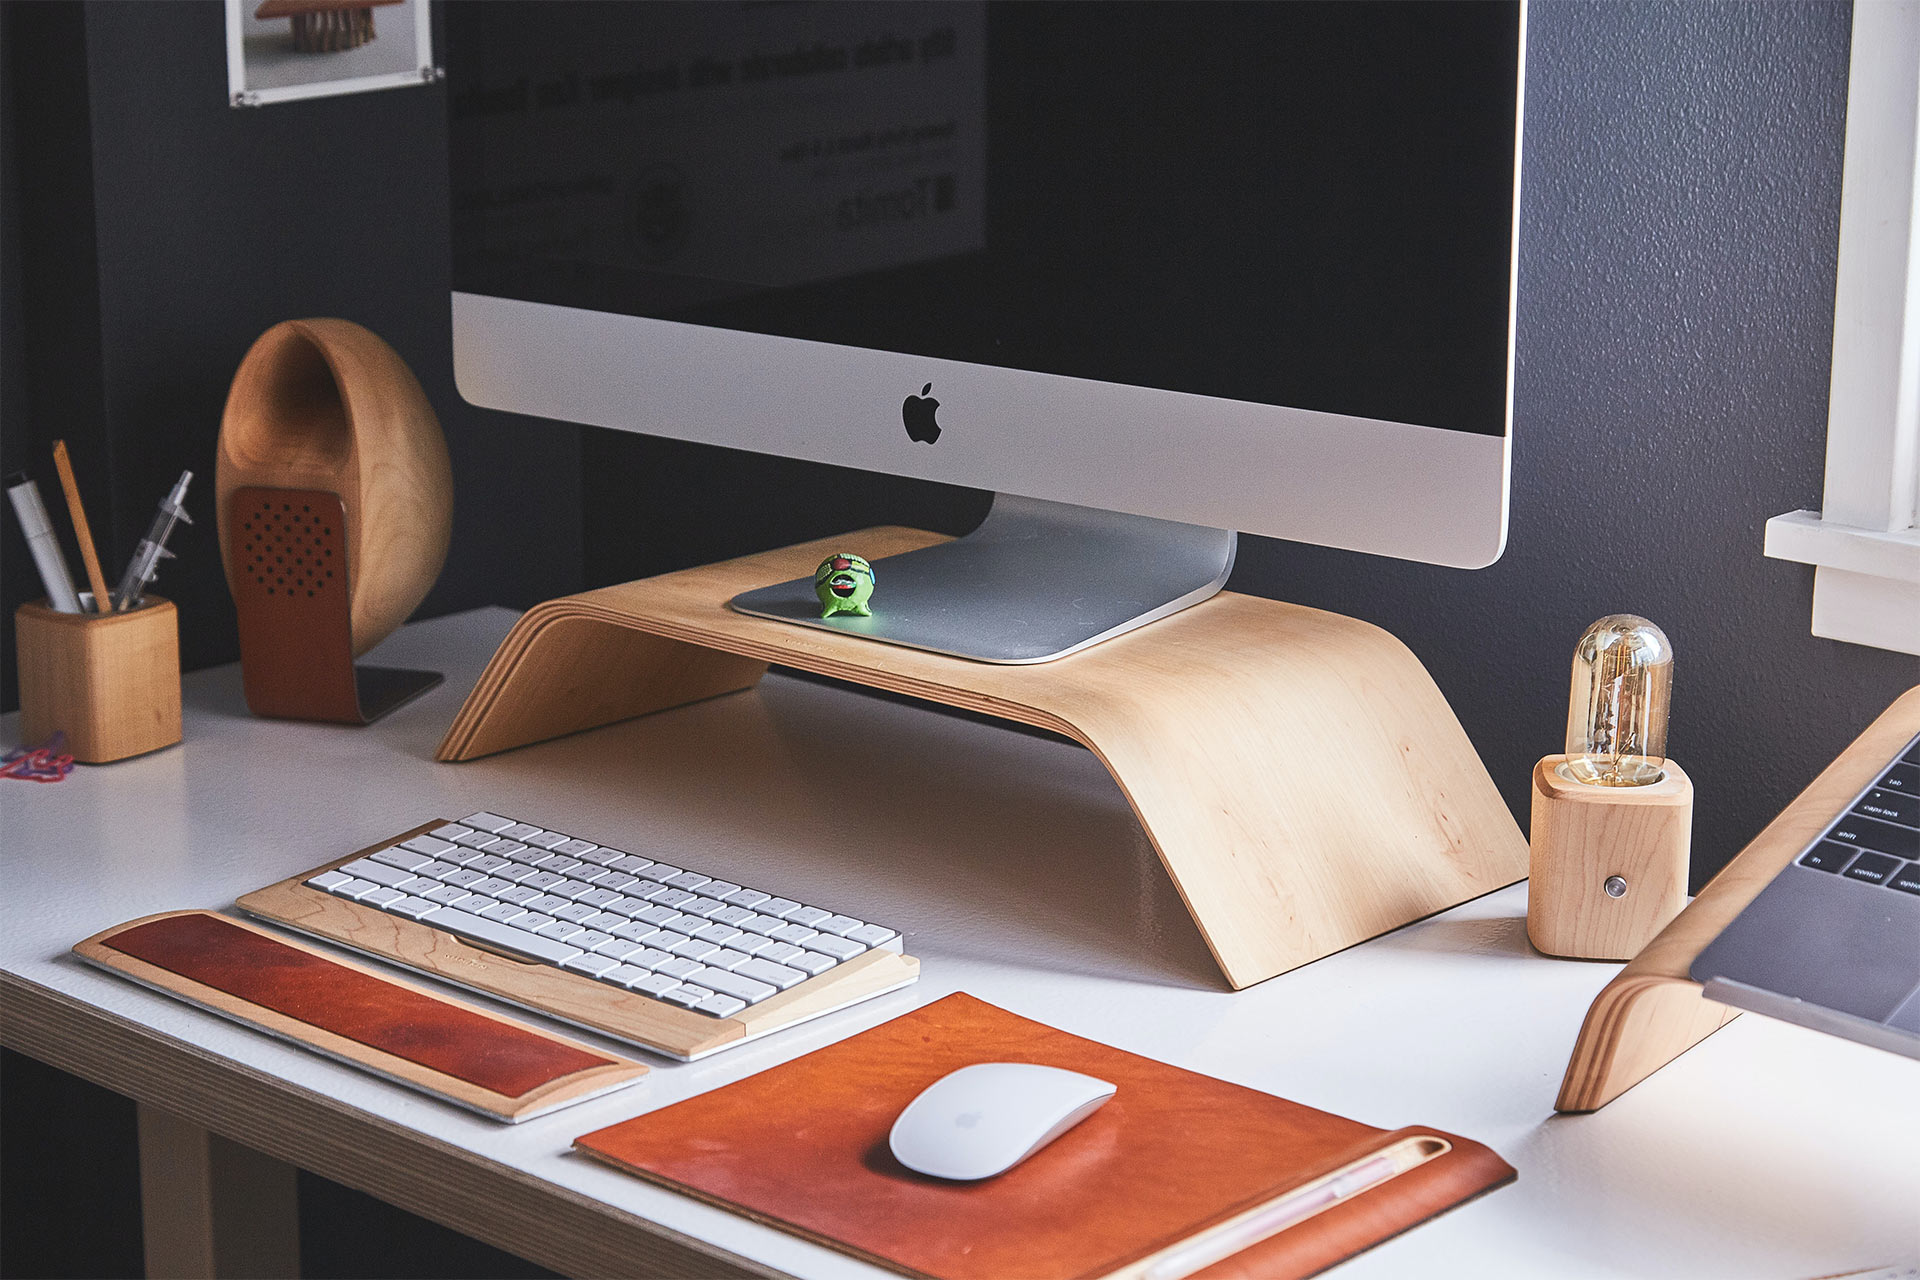 Foto di un iMac su un supporto di legno posizionato su una scrivania, con tastiera e mouse wireless.